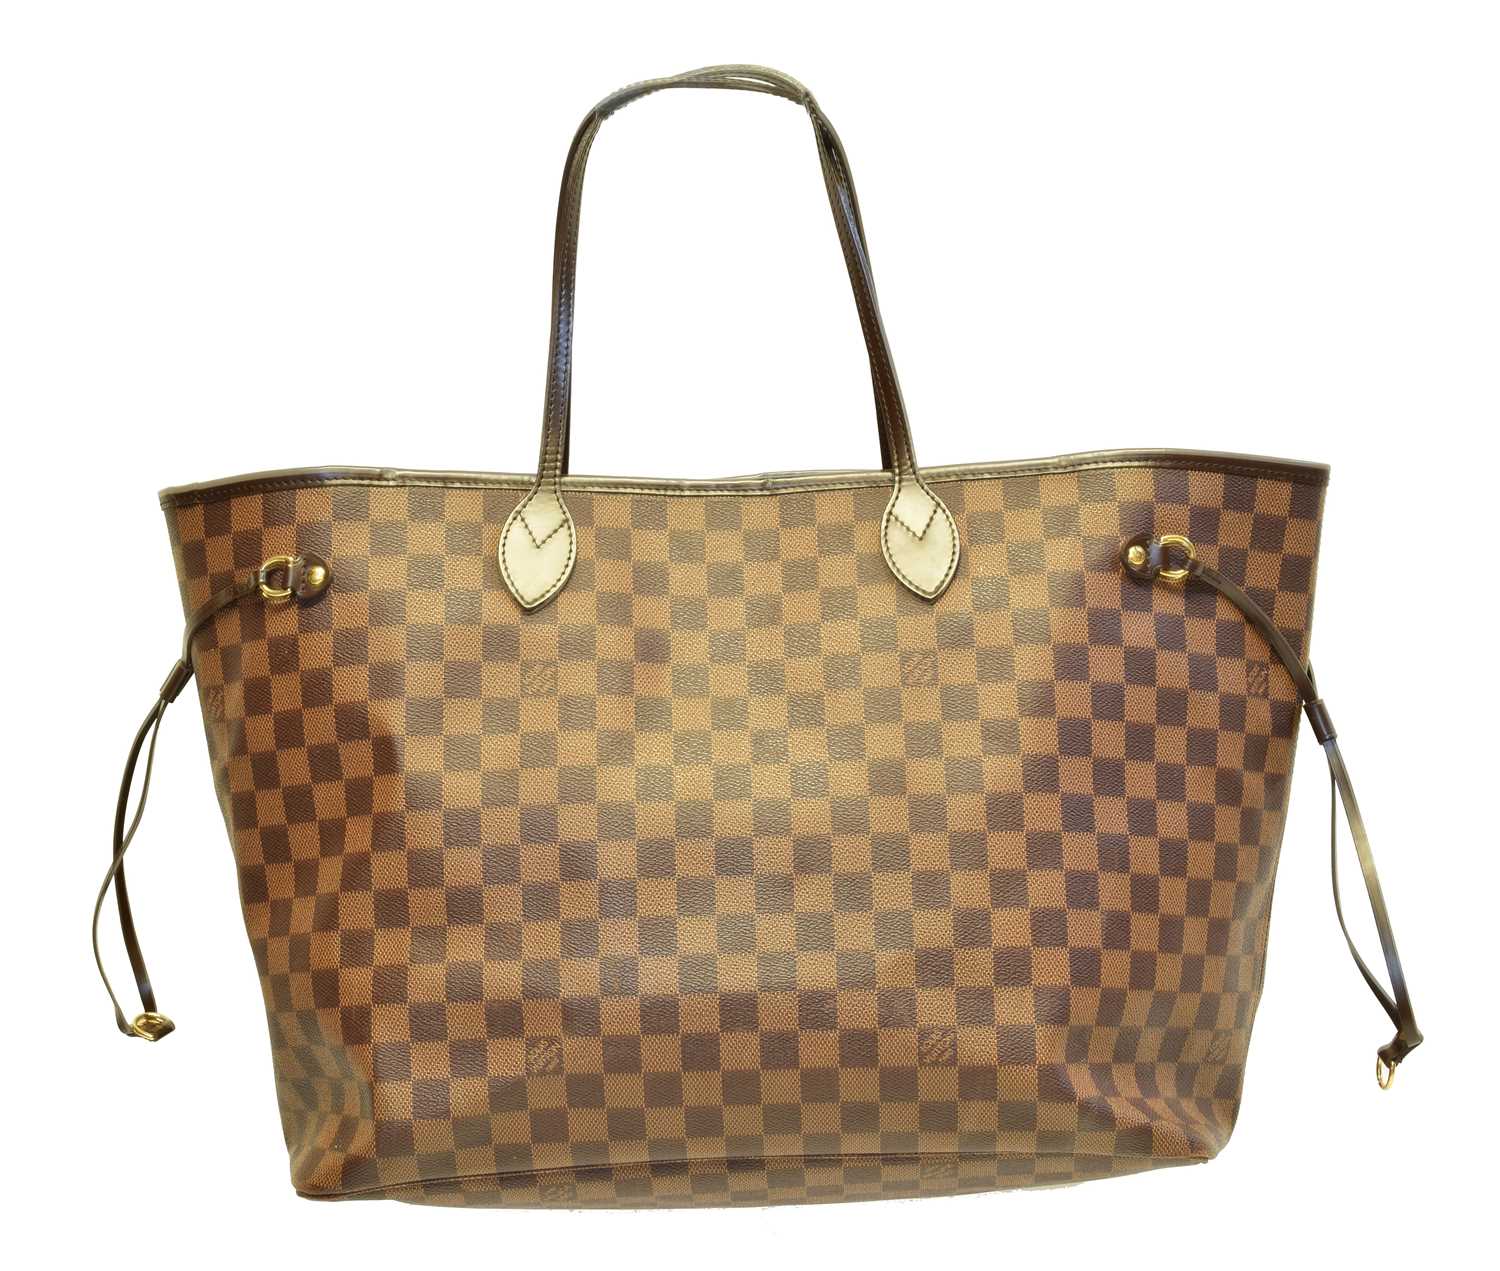 Lot 149 - A Louis Vuitton Damier Ebène Neverfull MM handbag